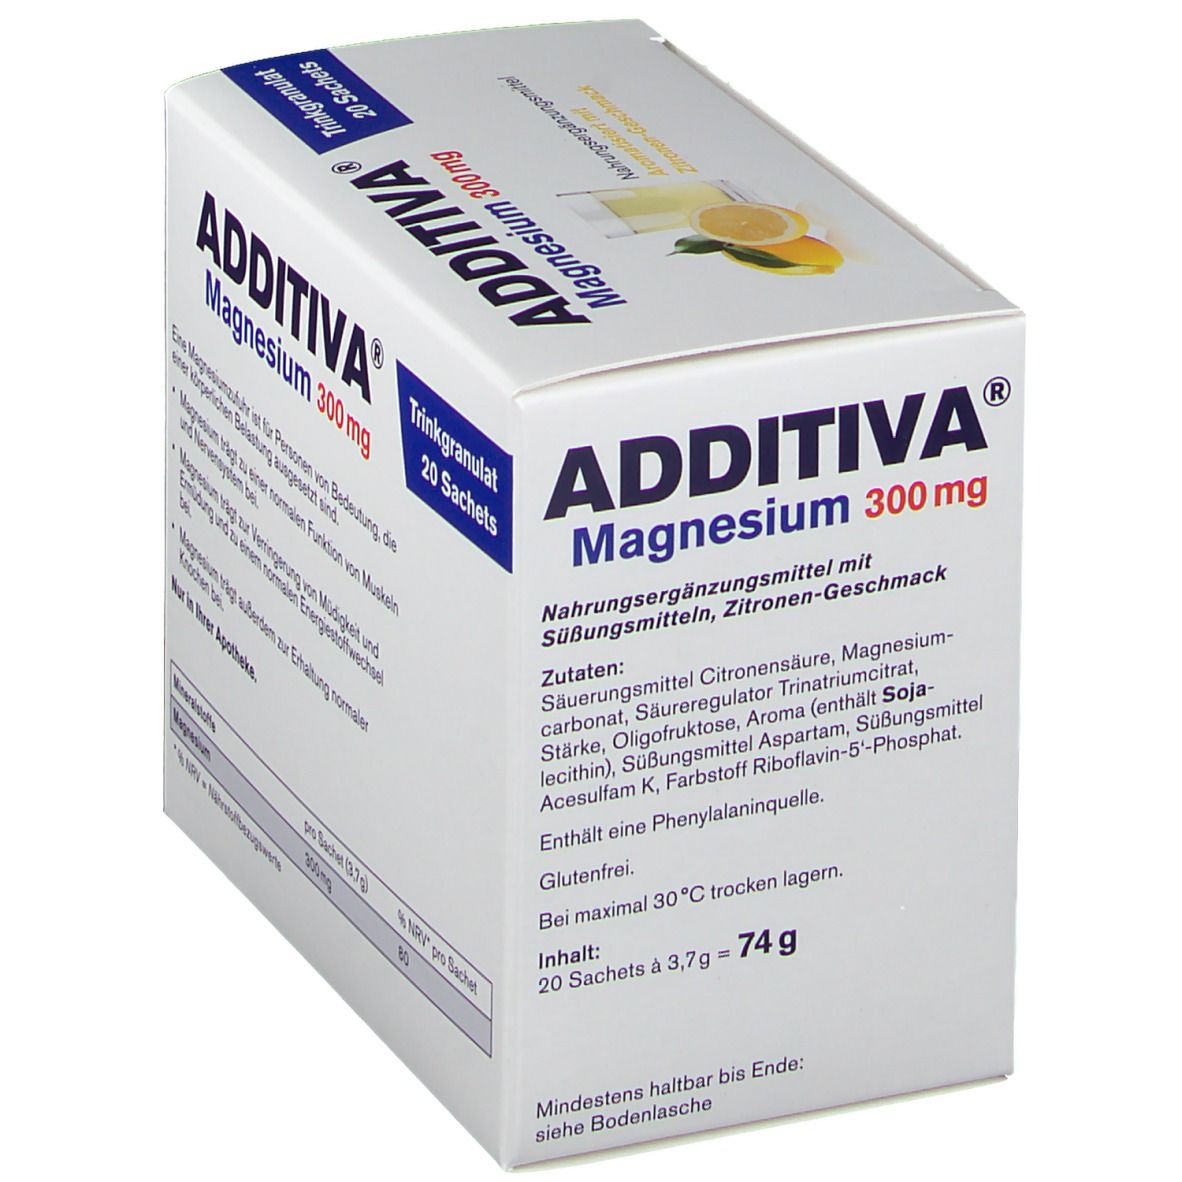 ADDITIVA® MAGNESIUM 300 mg N